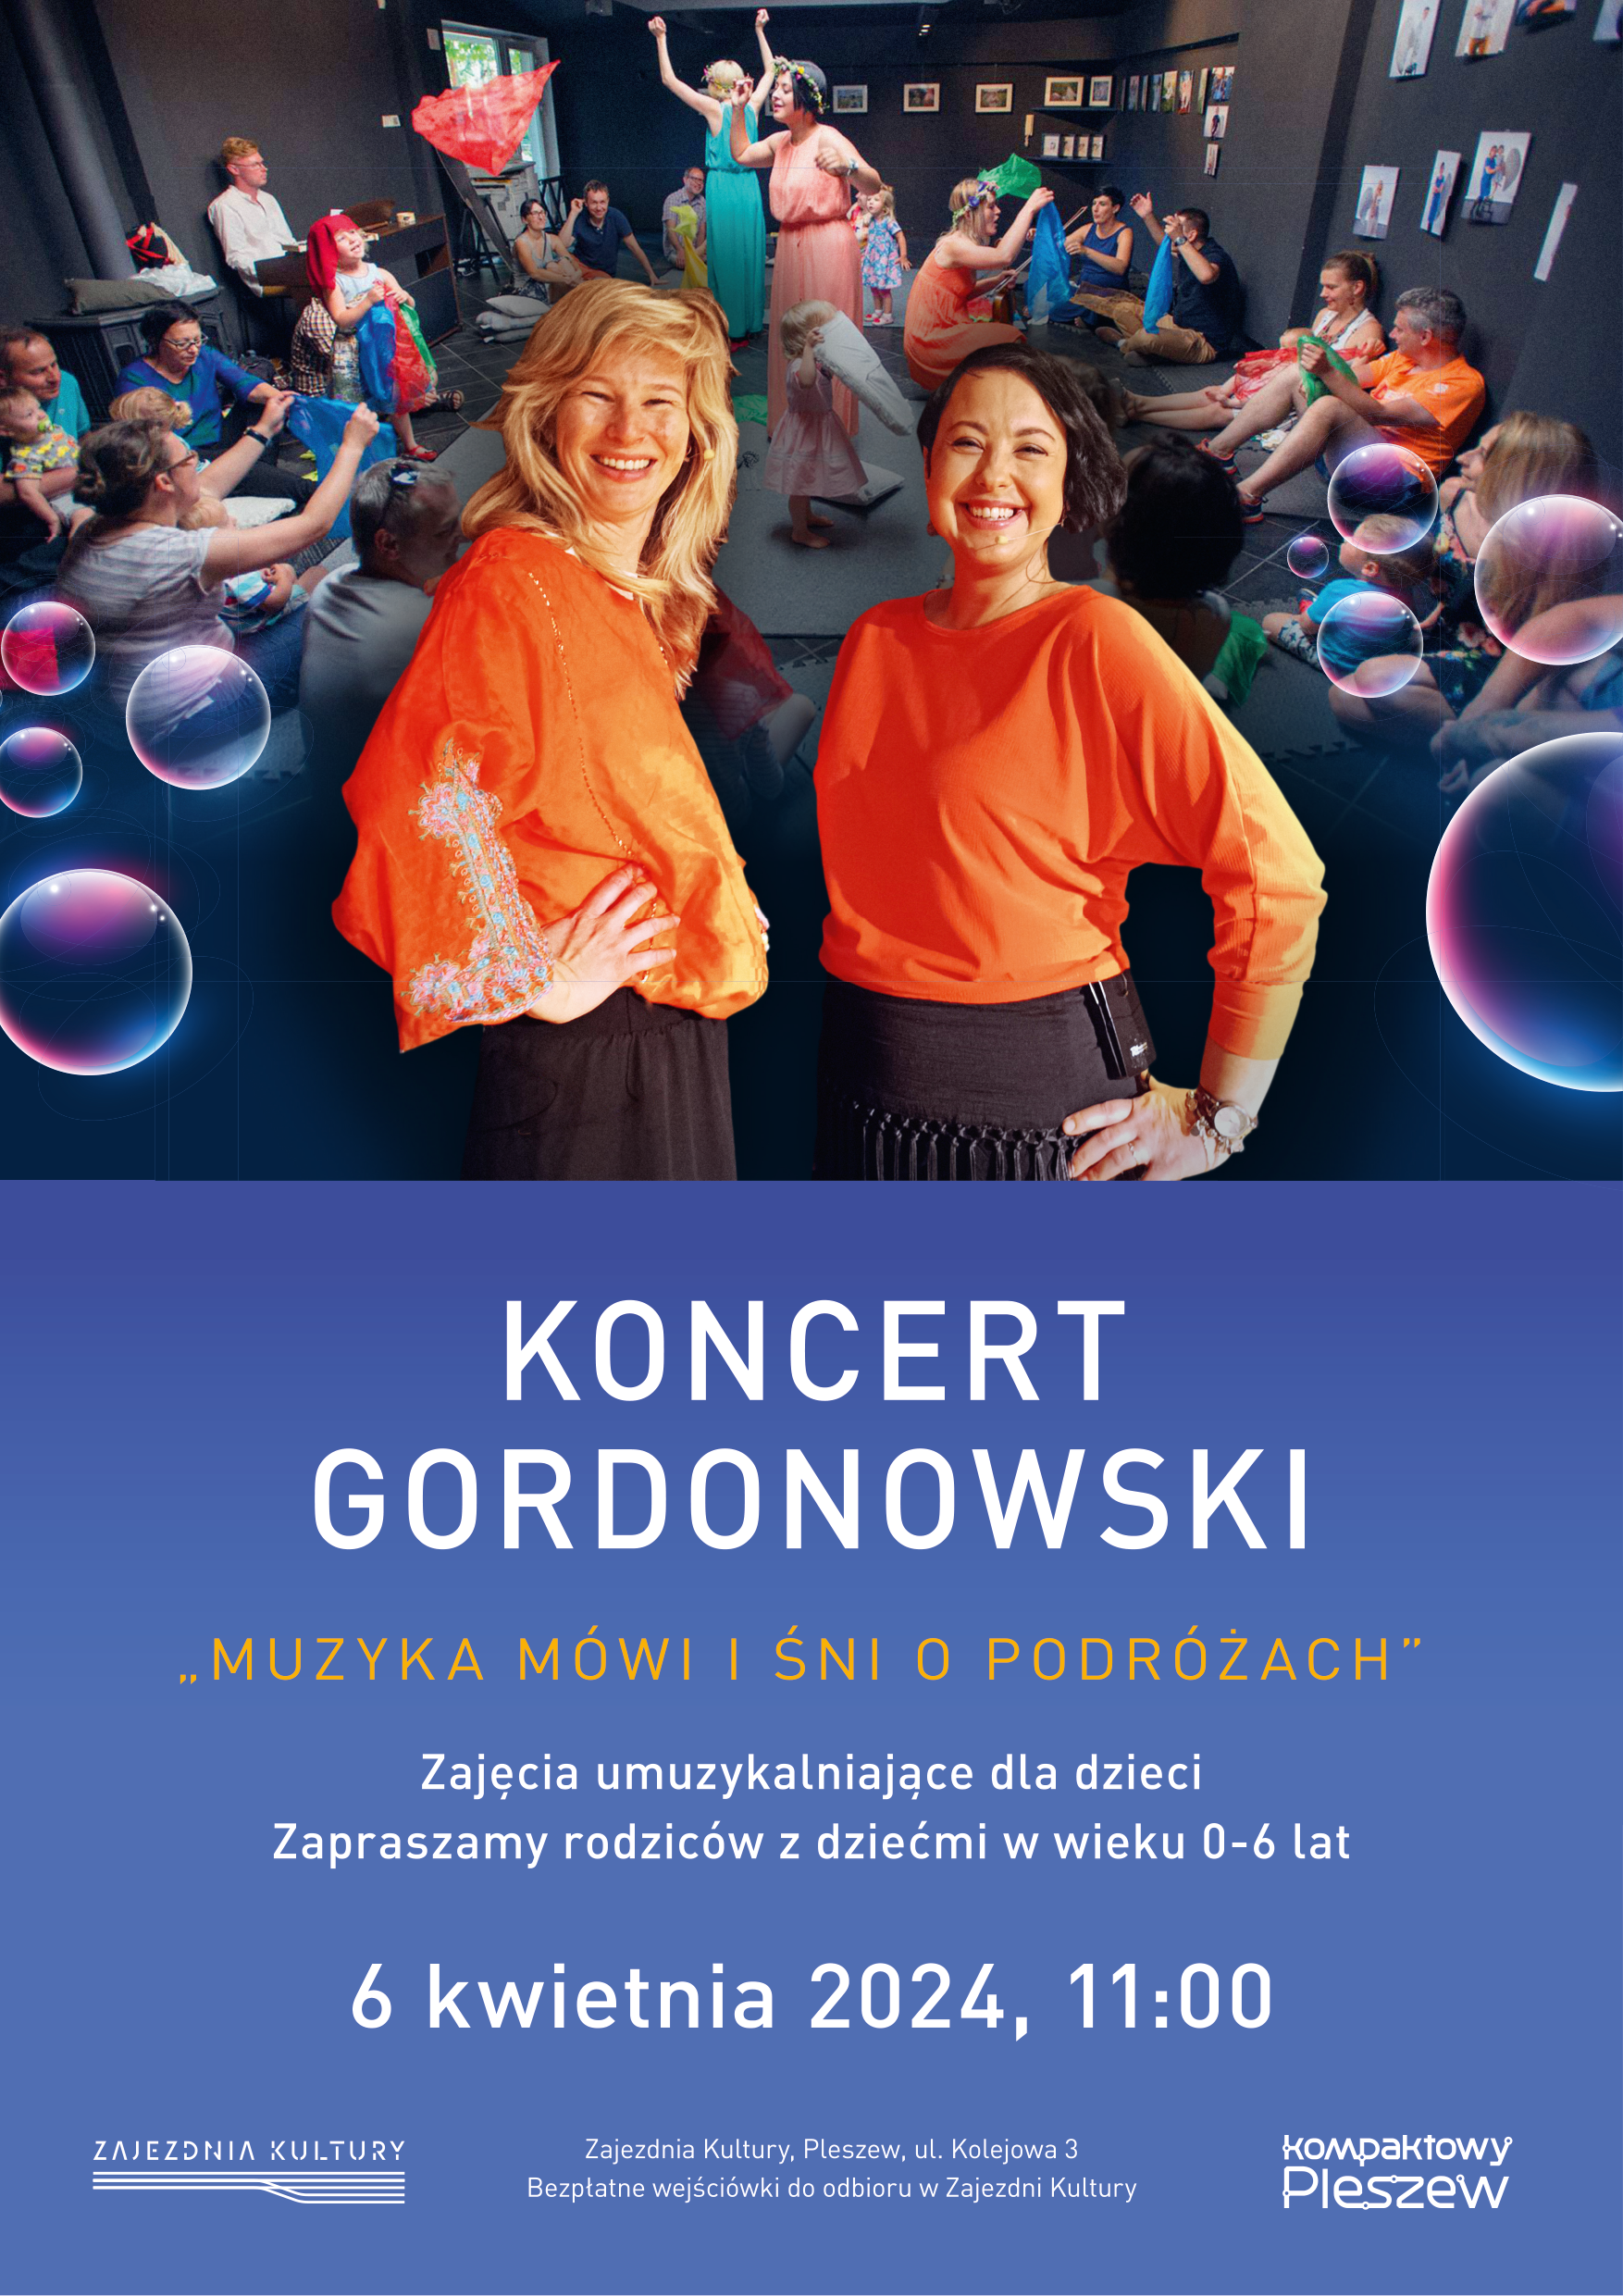 Plakat zajęć umuzykalniających dla dzieci "Koncert Gordonowski" odbywających się 6 kwietnia 2024 r. o godzinie 11:00.